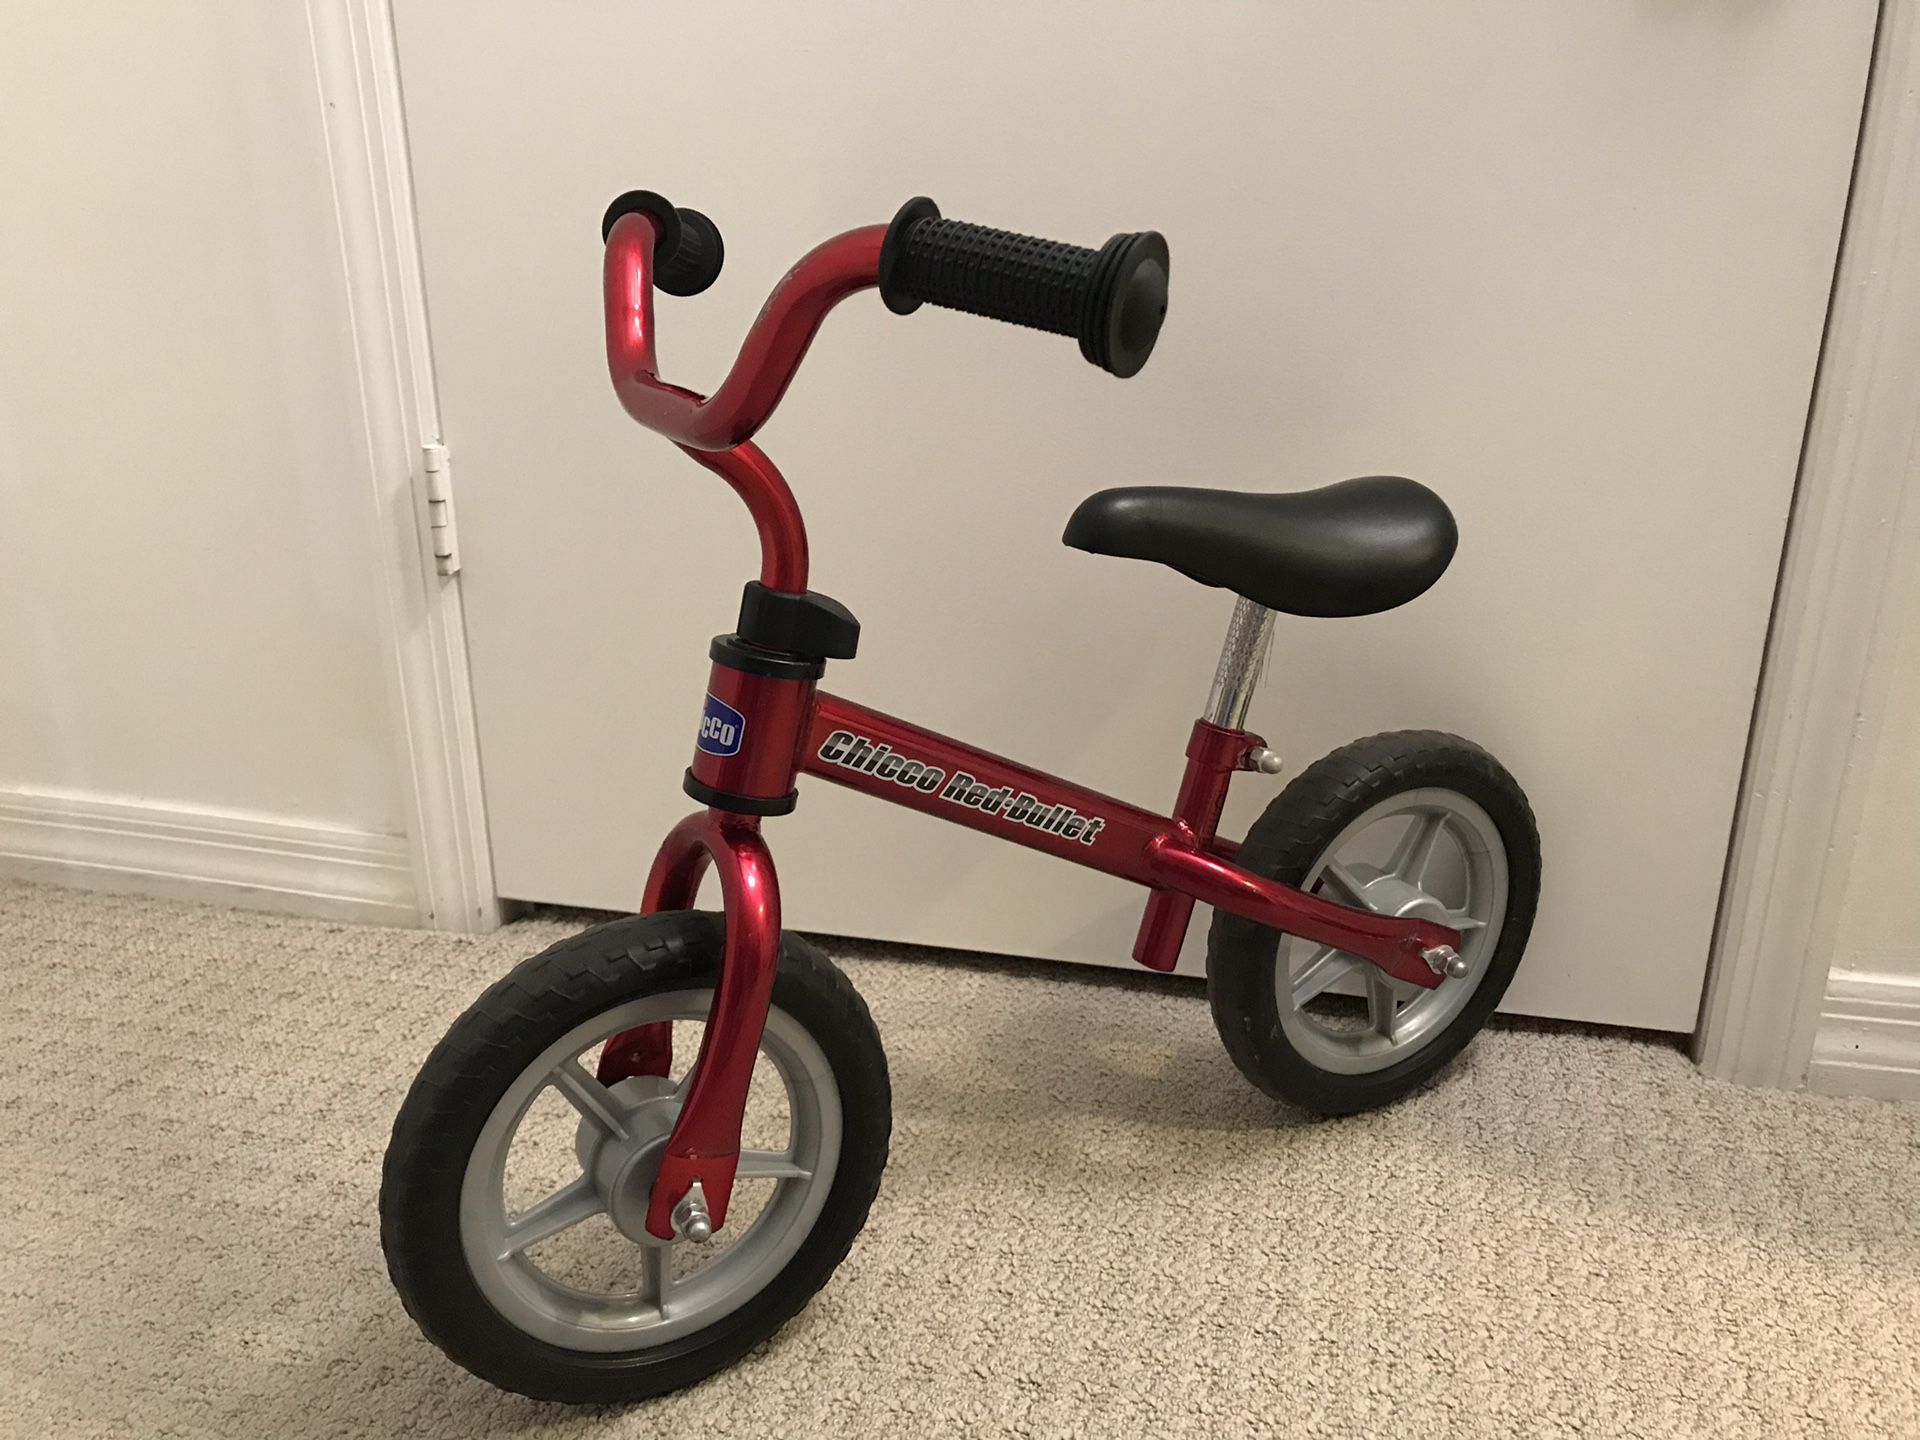 Balance bike for kids.